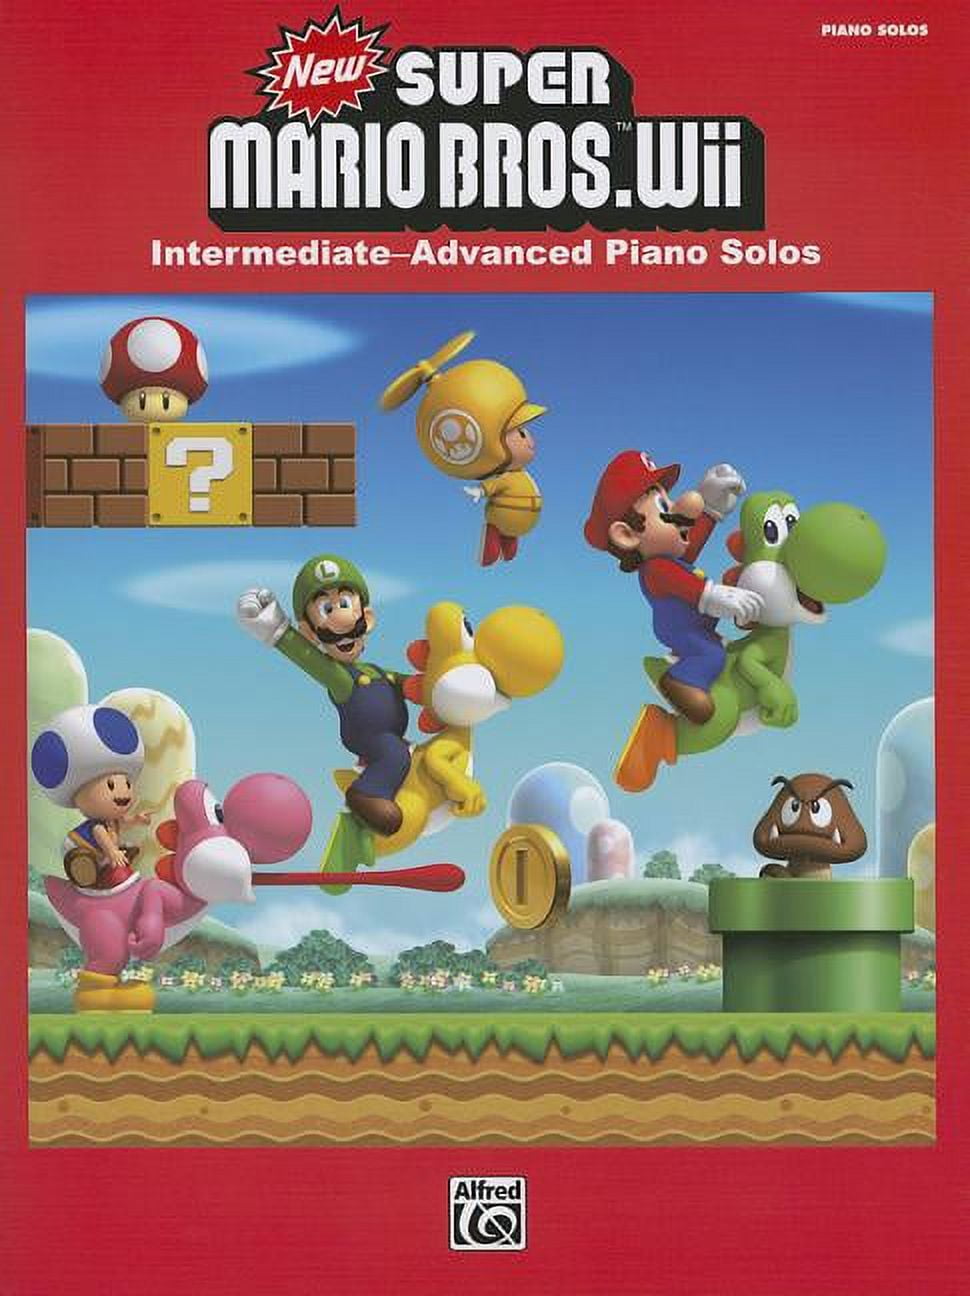 New Super Mario Bros. seria um novo título da série Super Mario Advance